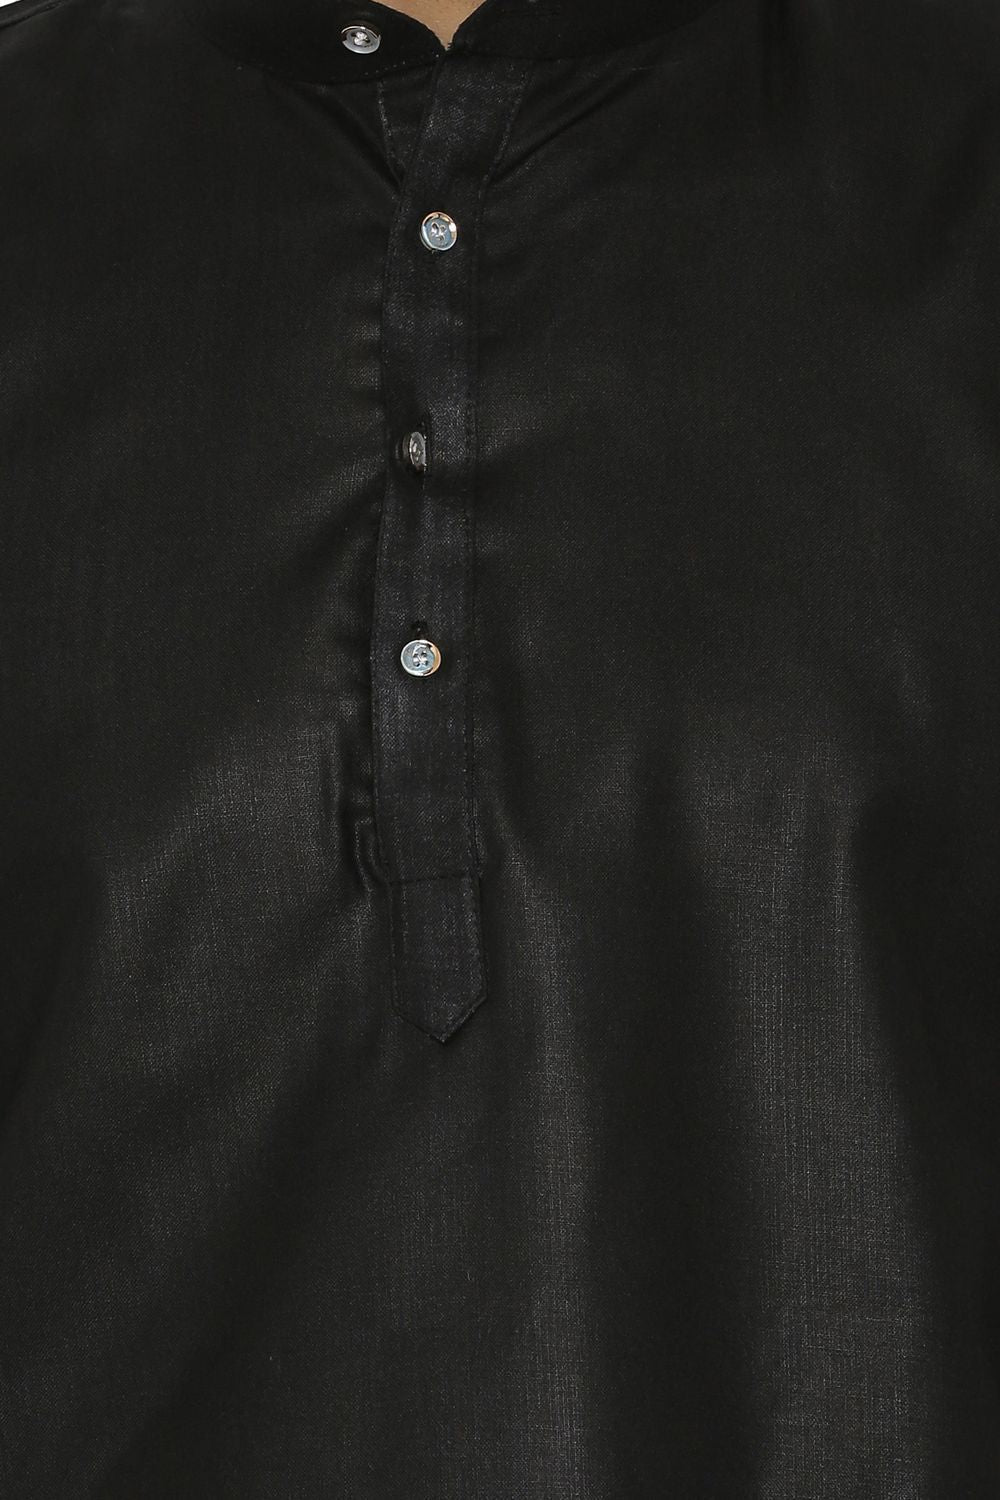 Cotton Silk Blend Black Kurta Shirt